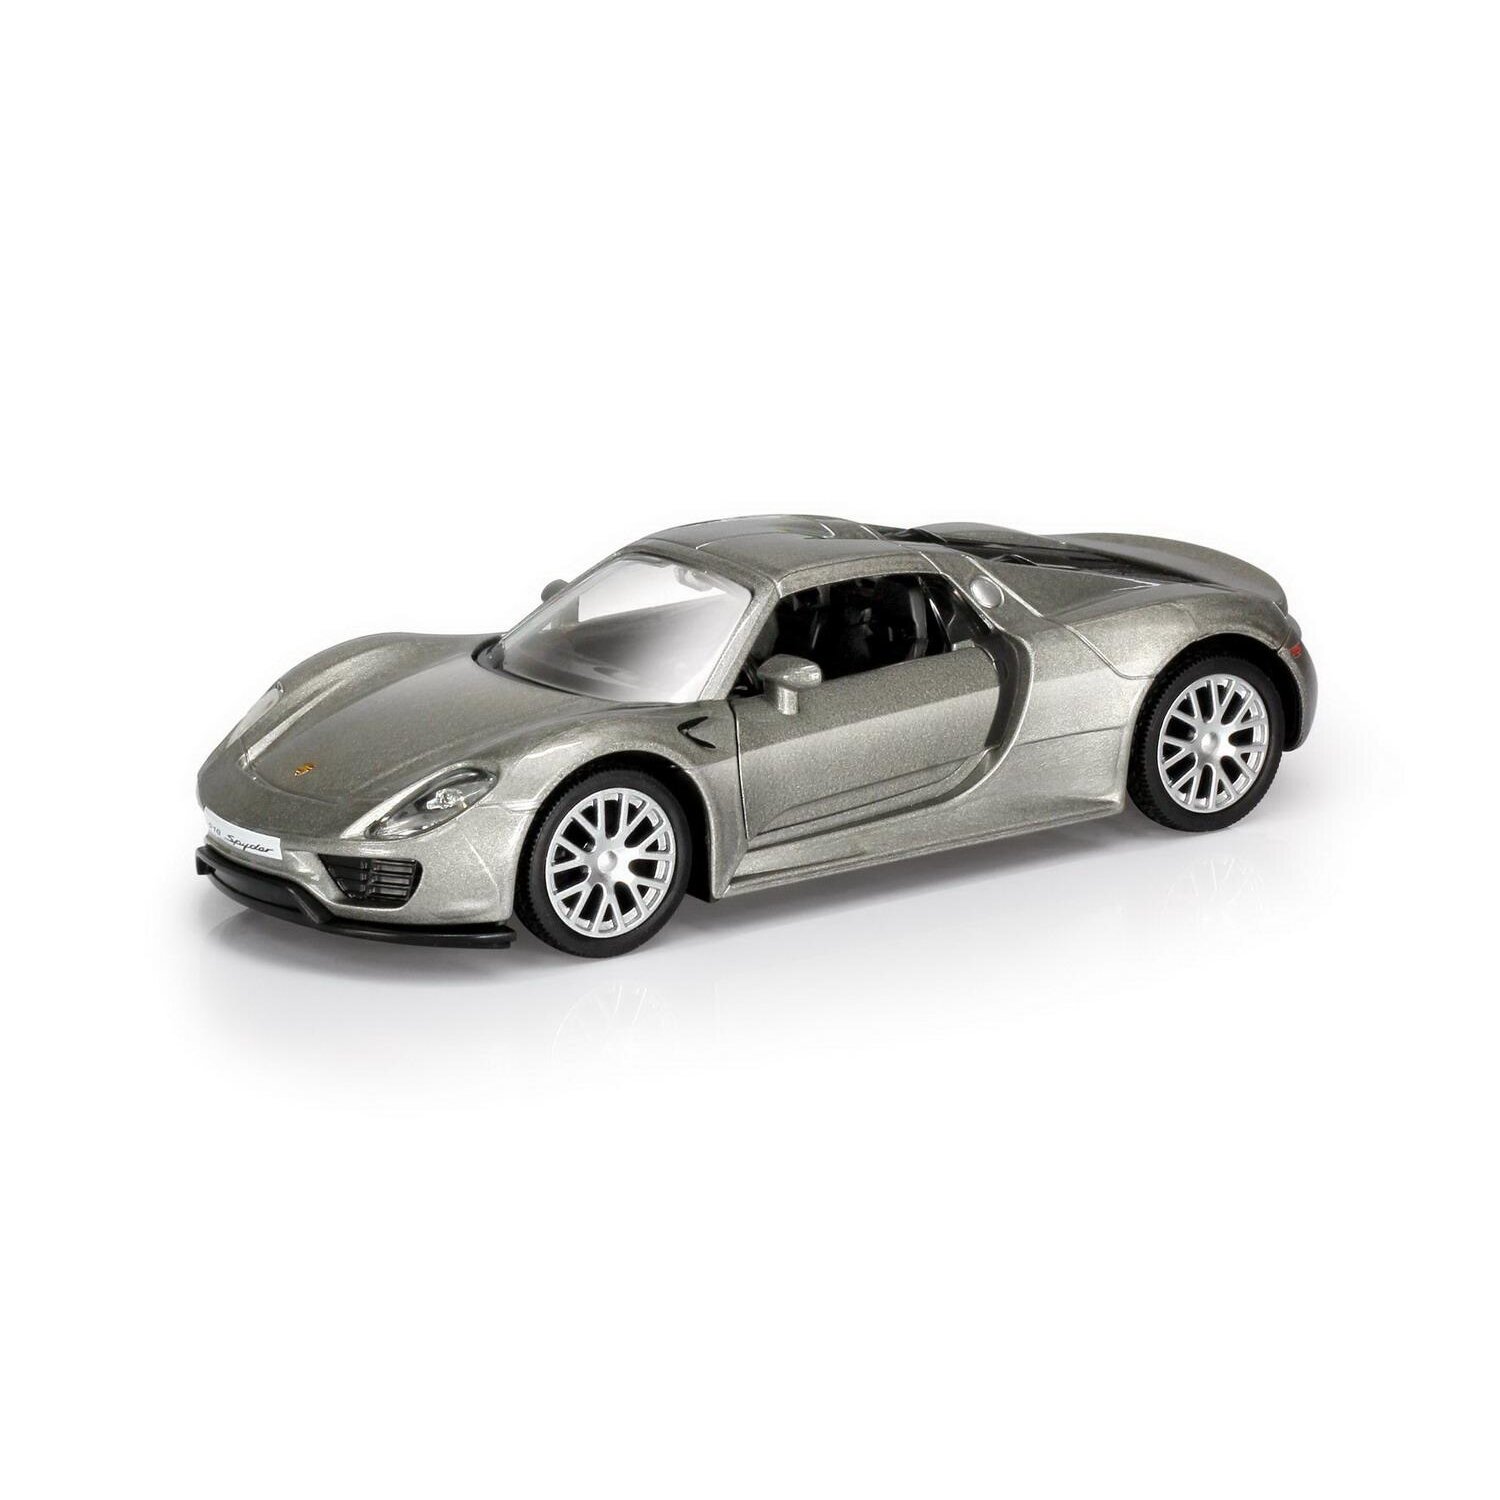 Машина металлическая RMZ City 1:32 Porsche 918 Spyder, инерционная, серебристый цвет - Uni Fortune [554030-SIL]